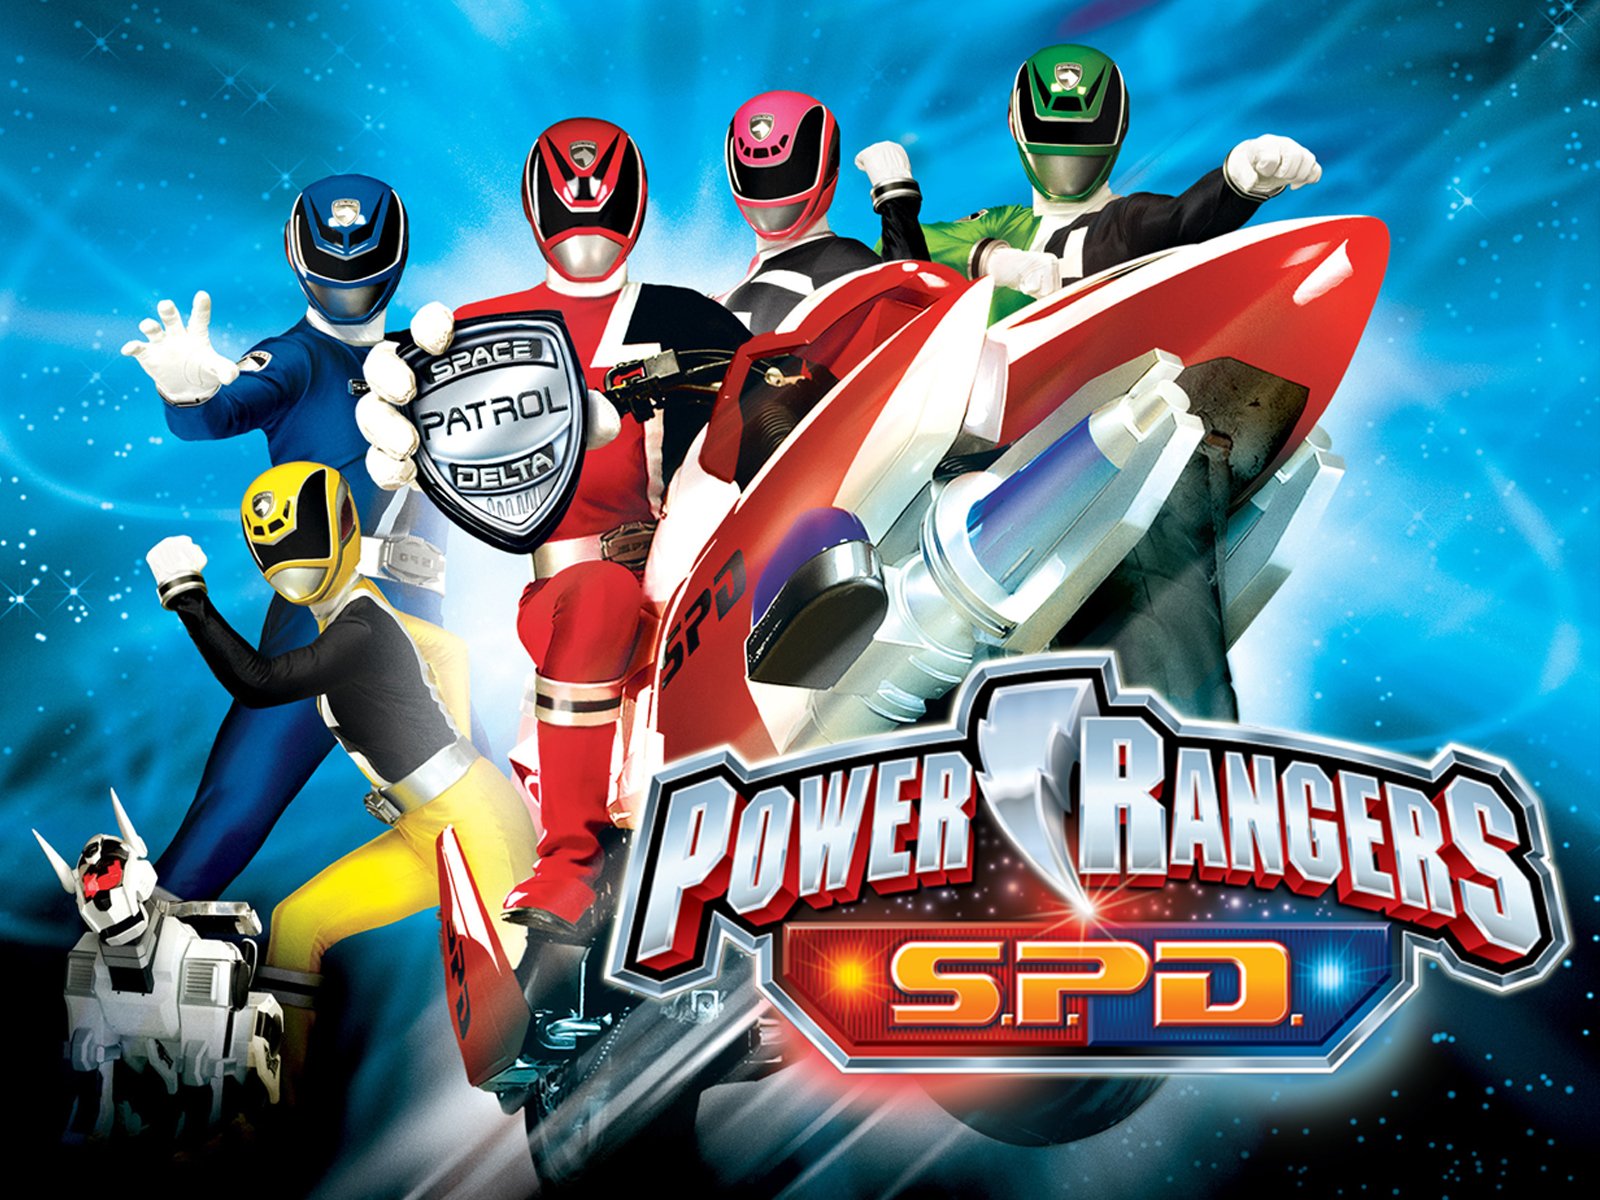 Watch Power Rangers SPD (Space Patrol Delta) Season 1